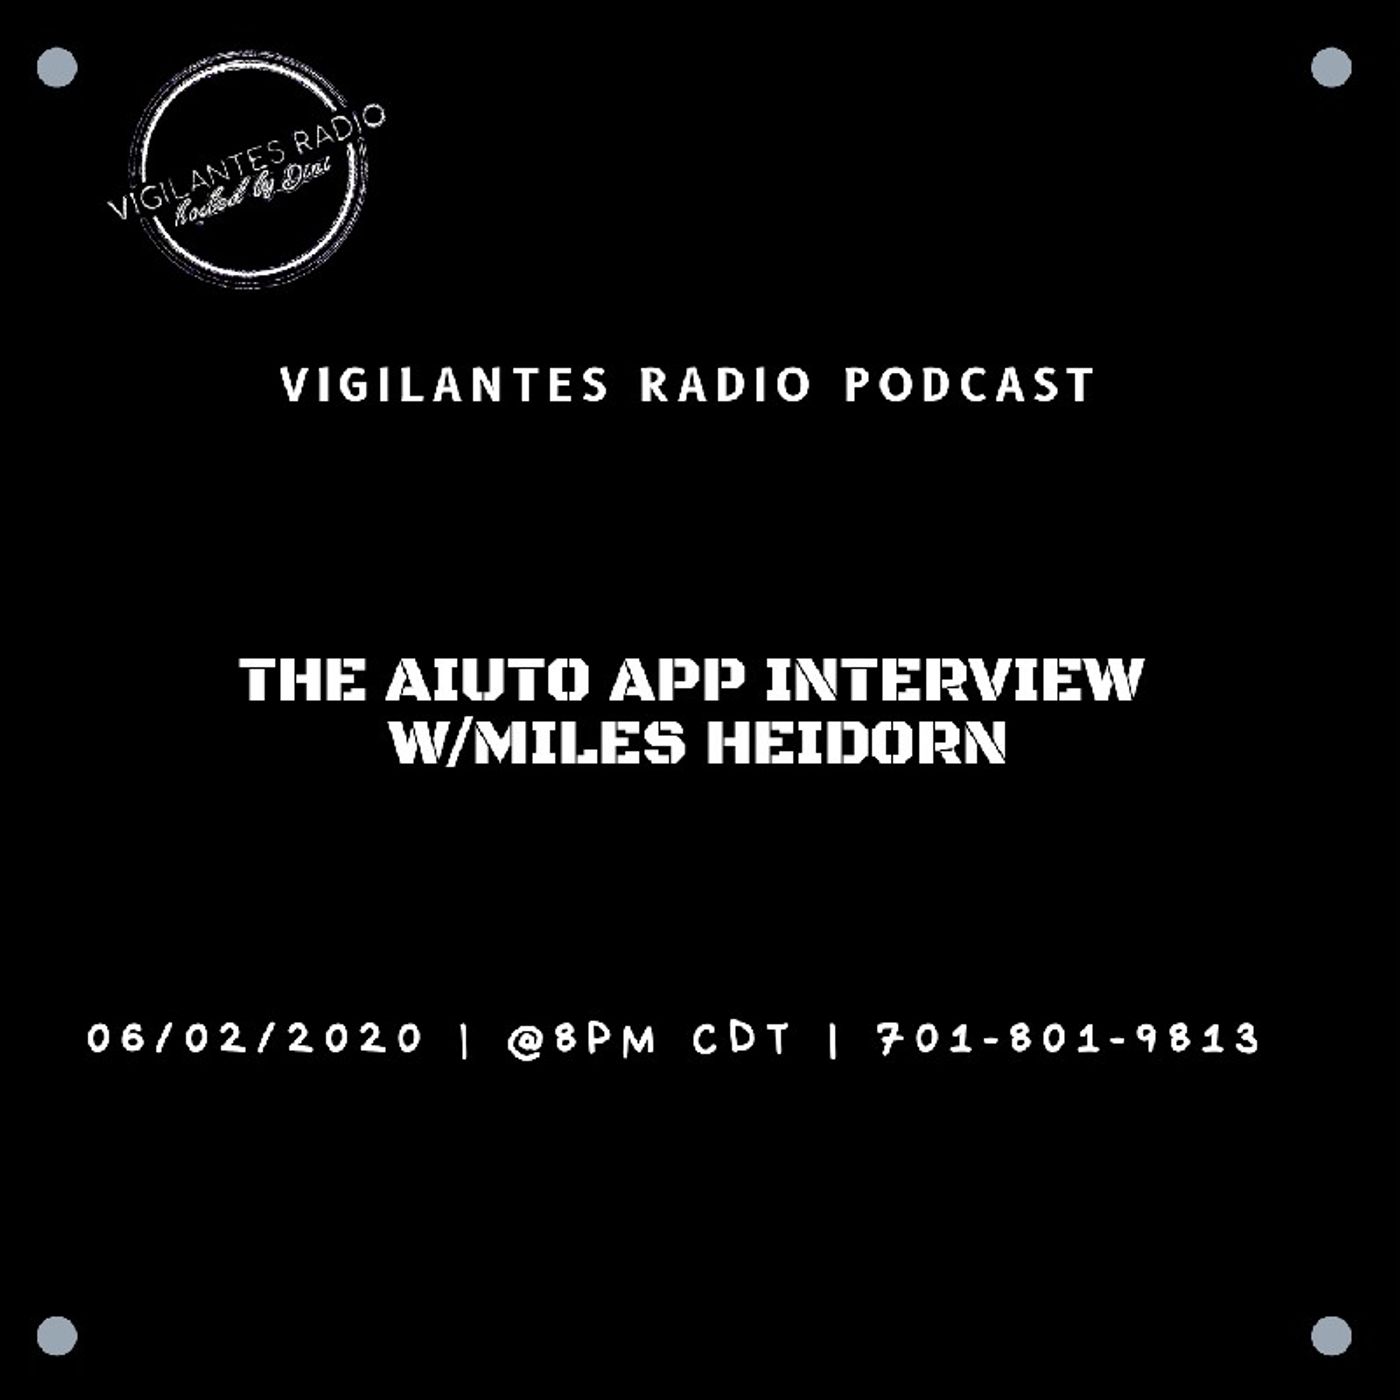 The Aiuto App Interview w/Miles Heidorn. Image